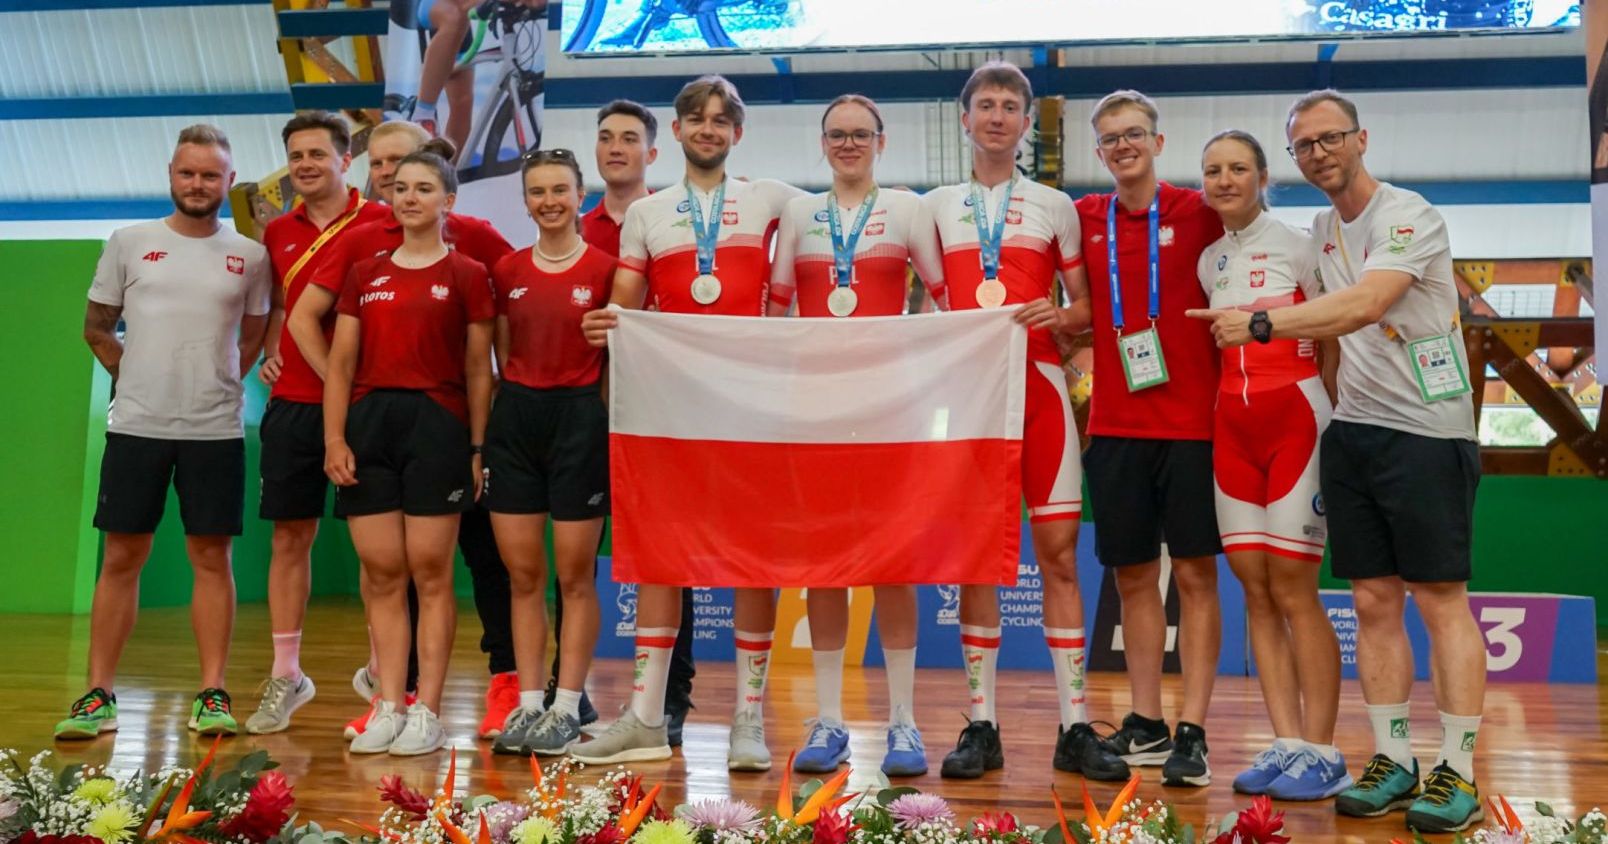 Reprezentacja Polski na Akademickich Mistrzostwach Świata w kolarstwie szosowym zdobyła sześć medali Na zdjęciu stoi akademicka reprezentacja Polski w kolarstwie szosowym z medalami na szyjach i polską flagą w rękach